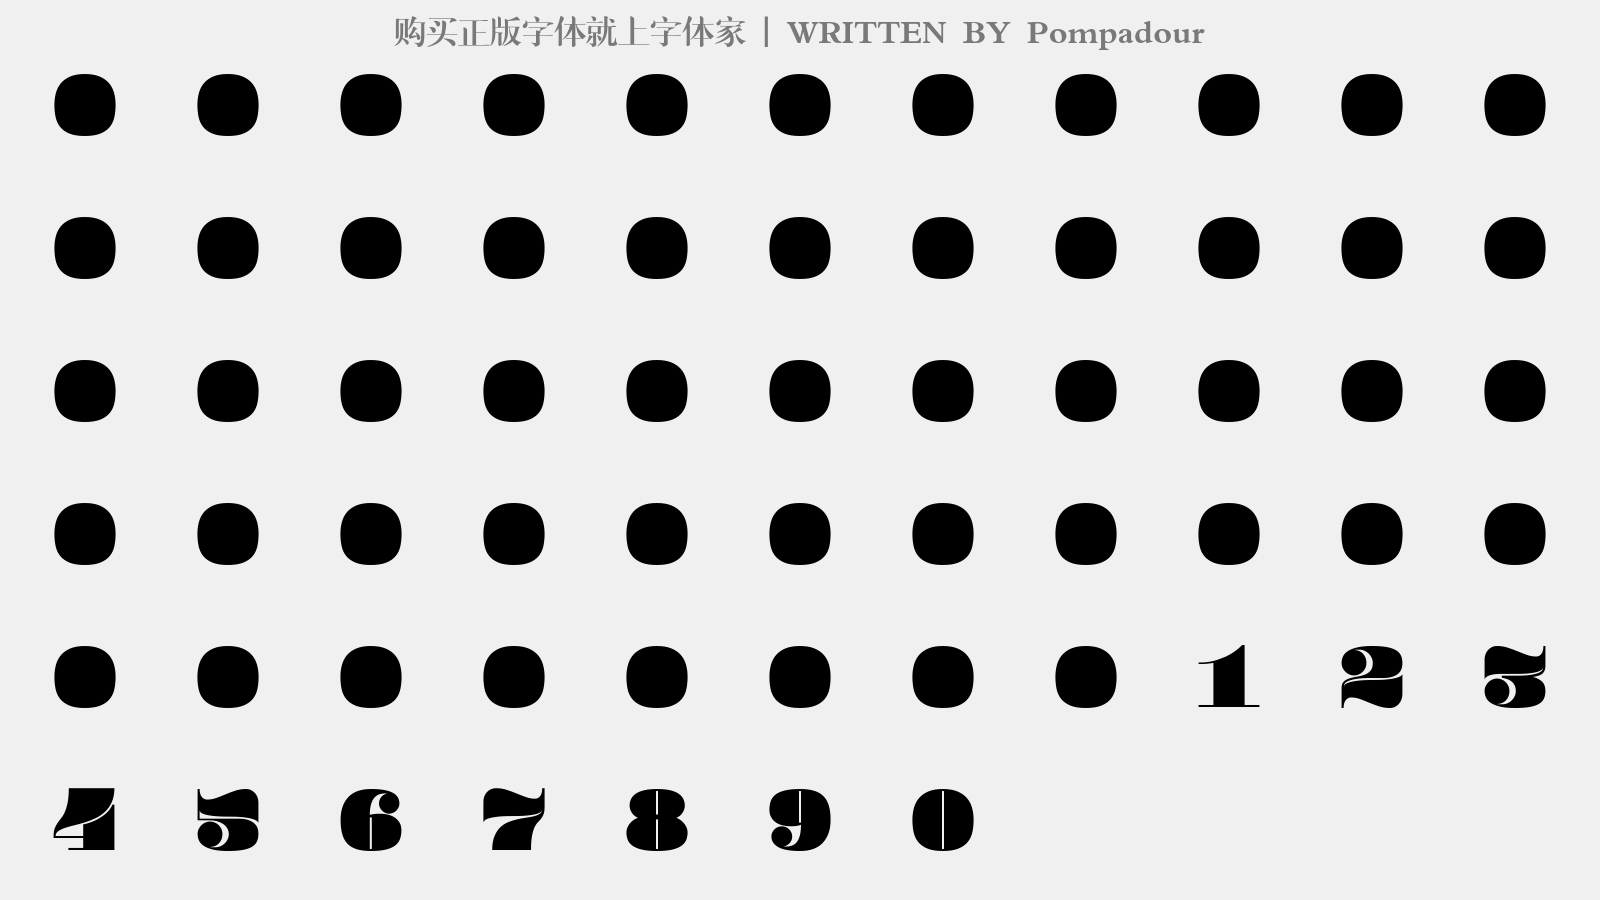 Pompadour - 大写字母/小写字母/数字